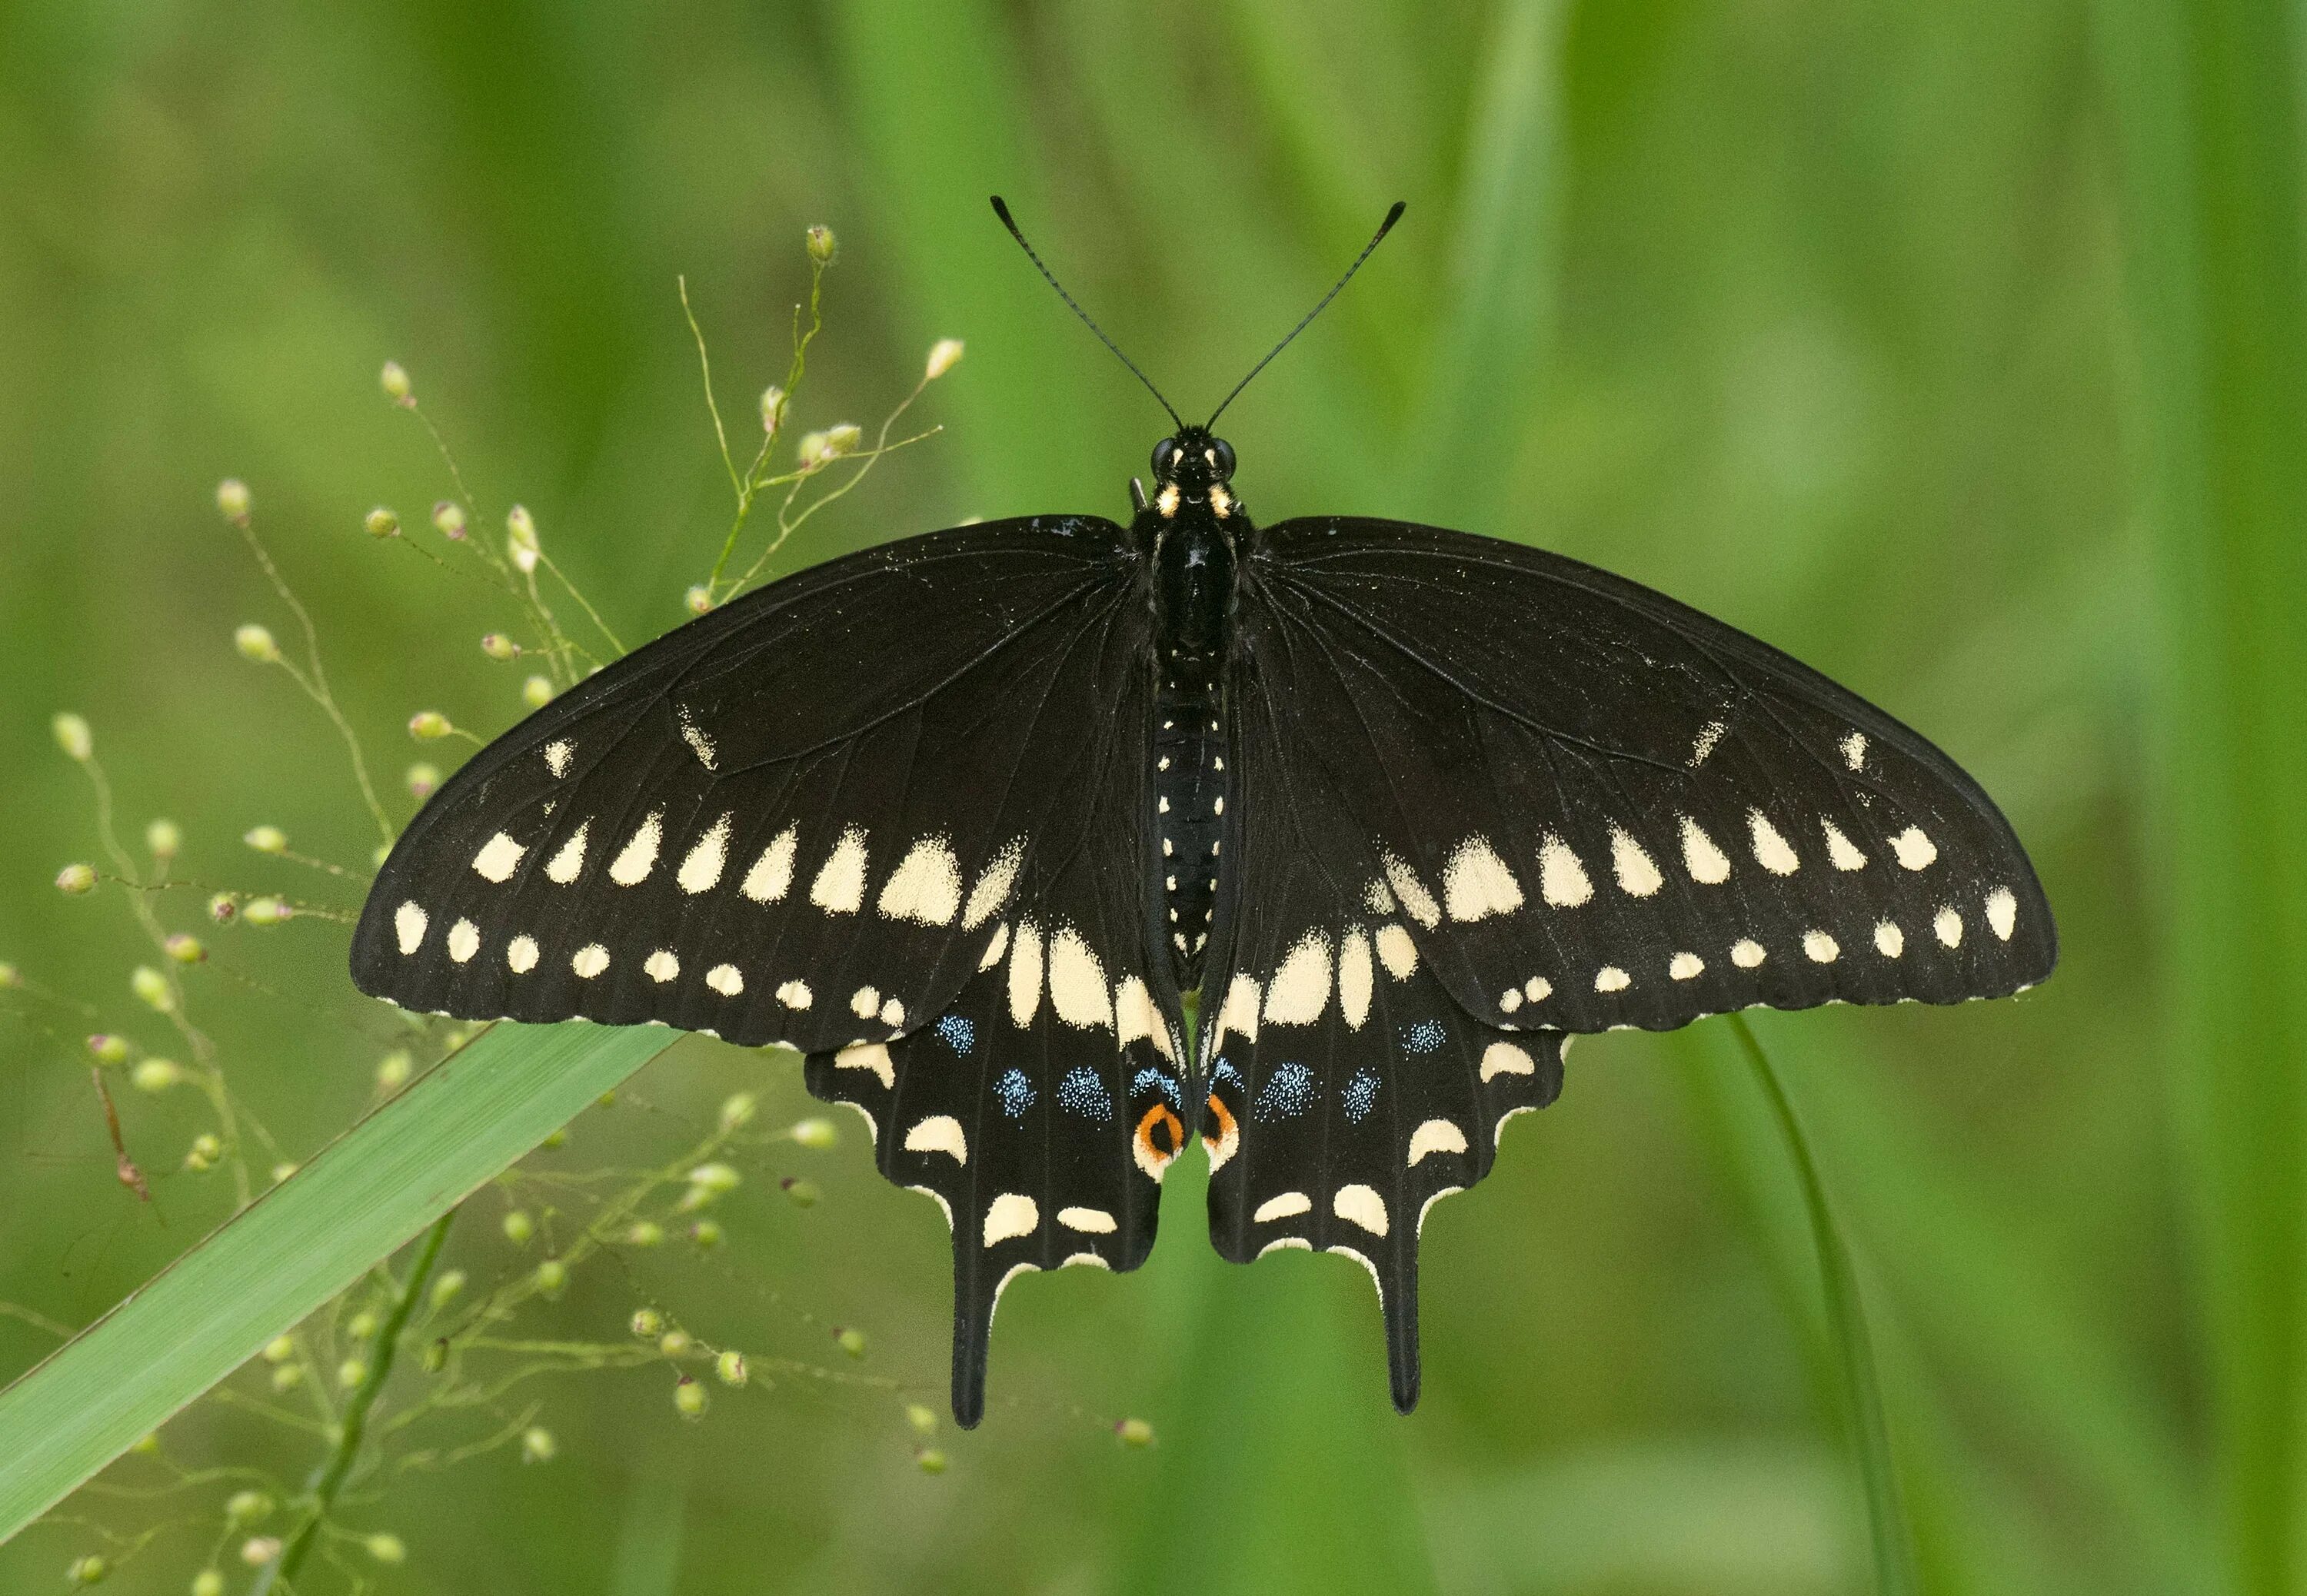 Бабочка Swallowtail. Black Swallowtail бабочка. Парусник Поликсена бабочка. Черный Махаон (Black Swallowtail) гусеница. Бабочка черный рынок